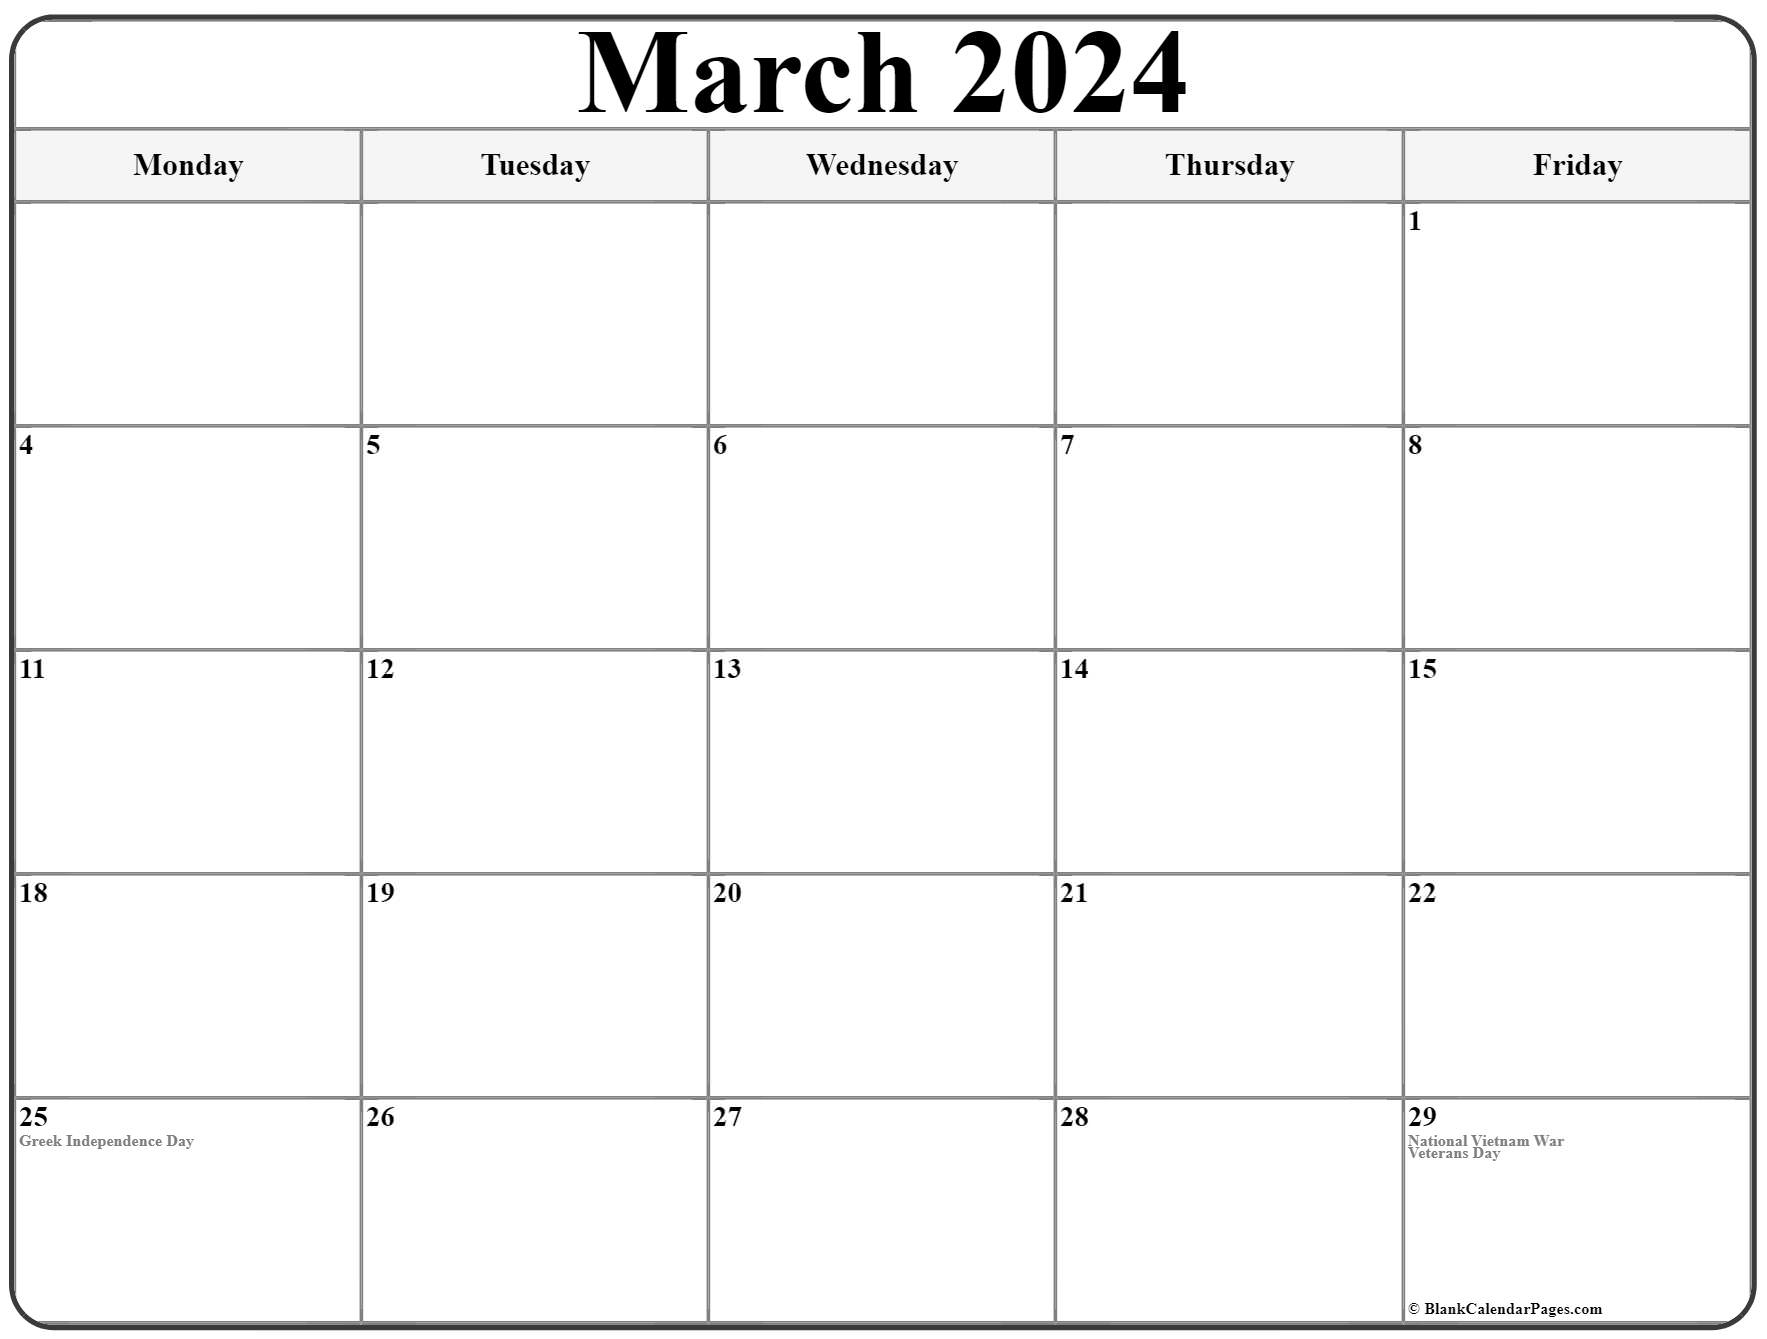 Good Friday 2024 Date Holiday Calendar Daffy Drucill